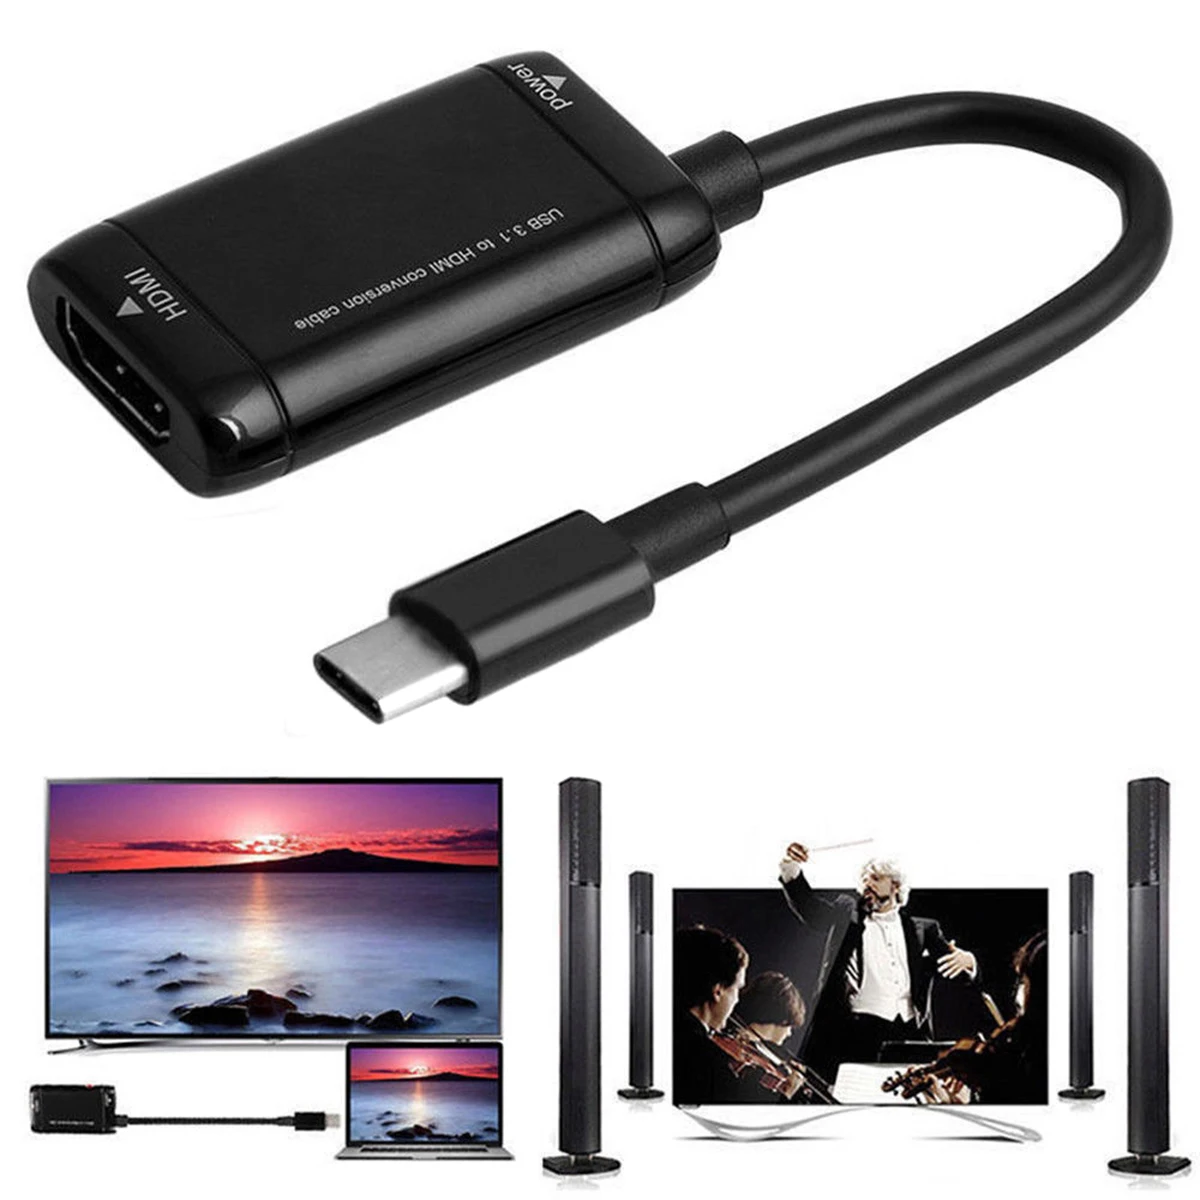 ذكر إلى أنثى نوع C إلى مقسم الوصلات البينية متعددة الوسائط وعالية الوضوح (HDMI) محول محول USB-C USB 3.1 كابل محول الفيديو ل MHL أندرويد هاتف لوحي HDTV